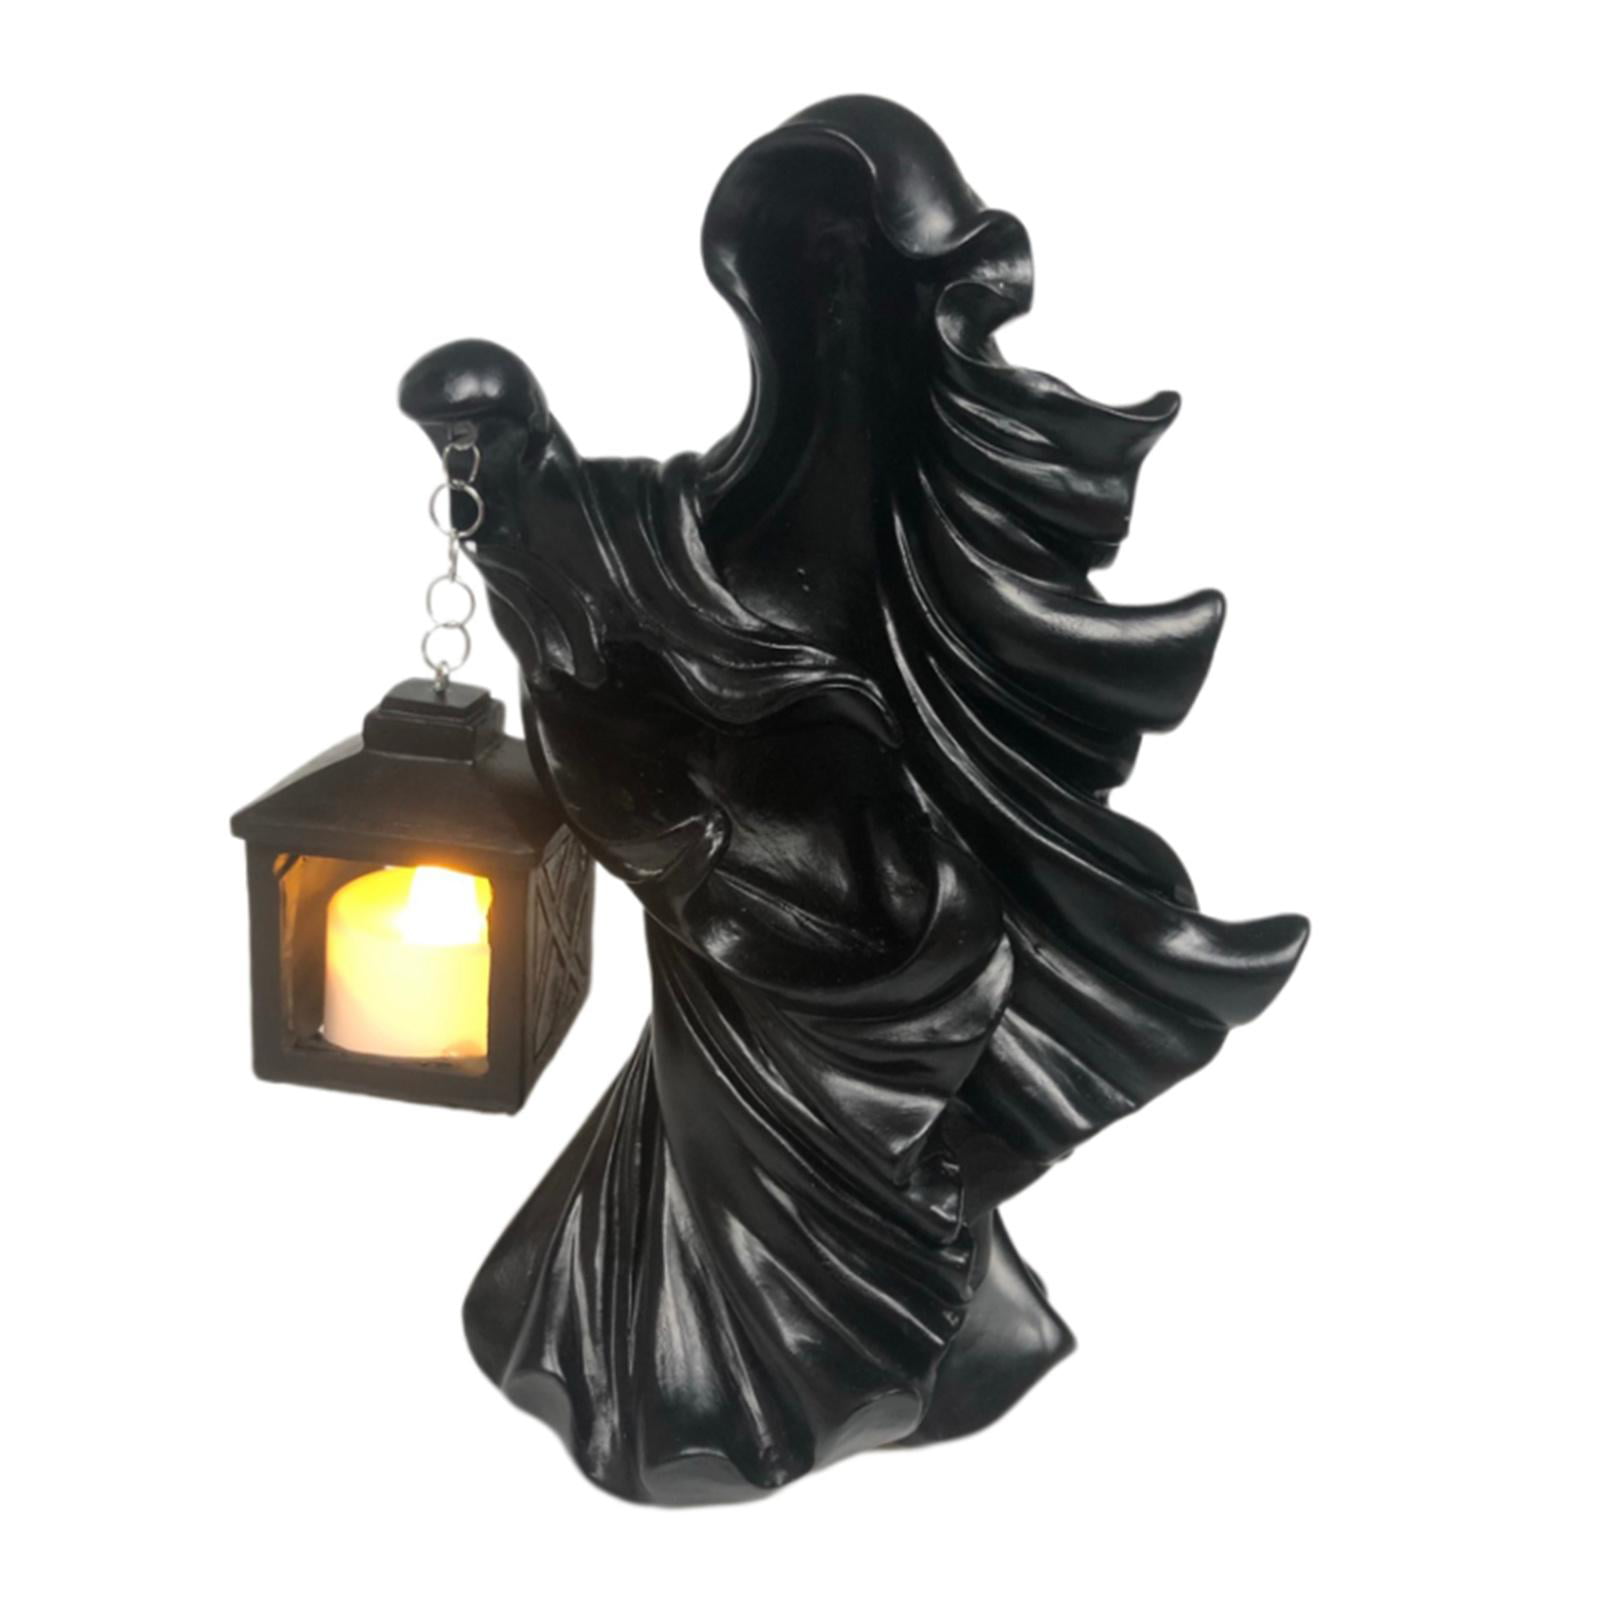 Hell's Messenger Lantern Faceless Ghost Sculpture Halloween Statue Decor Light 